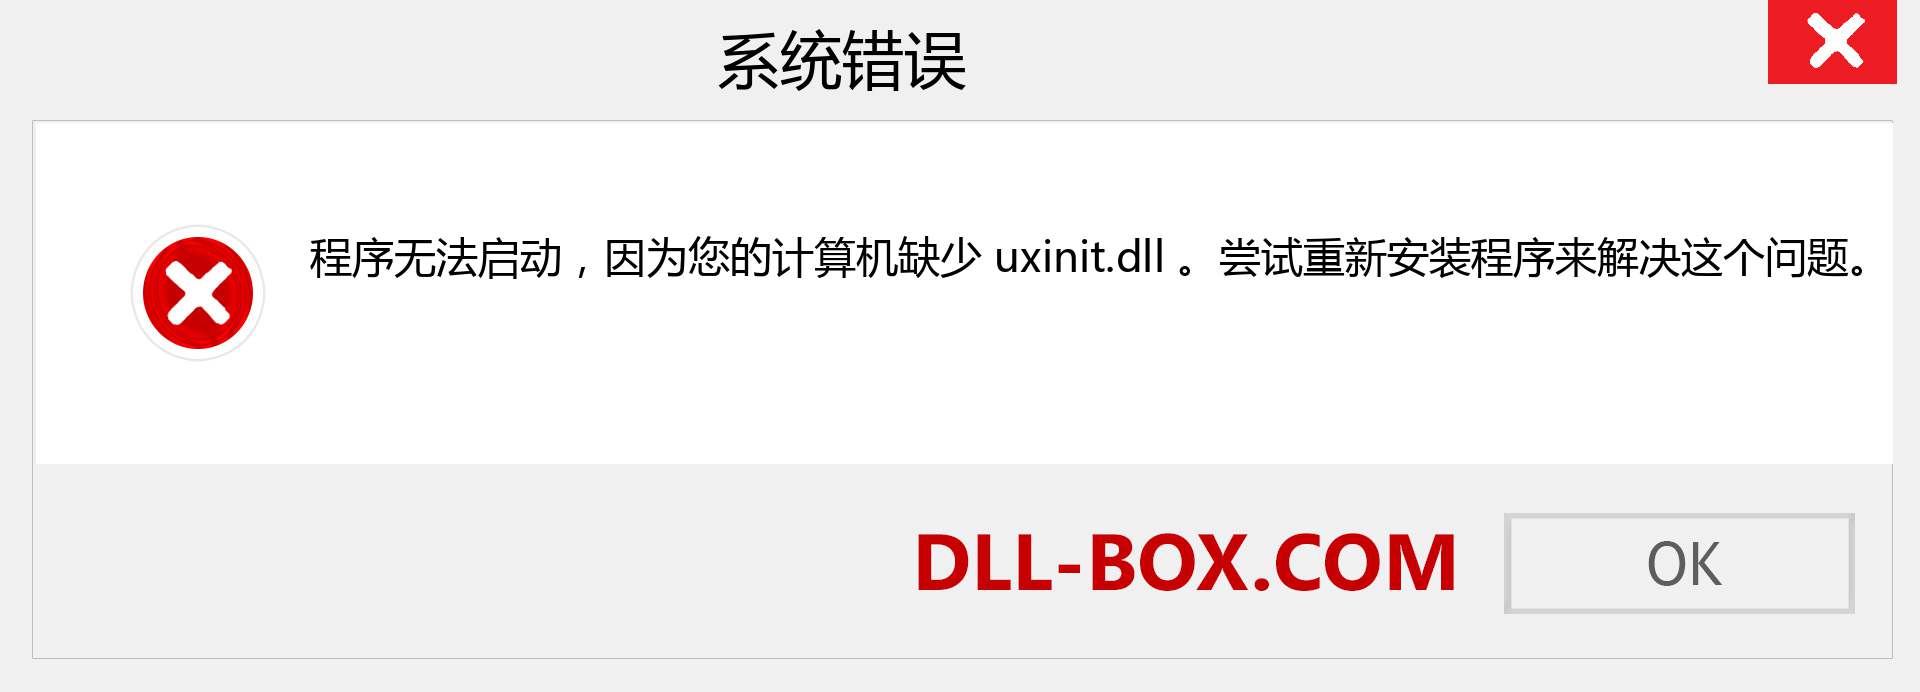 uxinit.dll 文件丢失？。 适用于 Windows 7、8、10 的下载 - 修复 Windows、照片、图像上的 uxinit dll 丢失错误